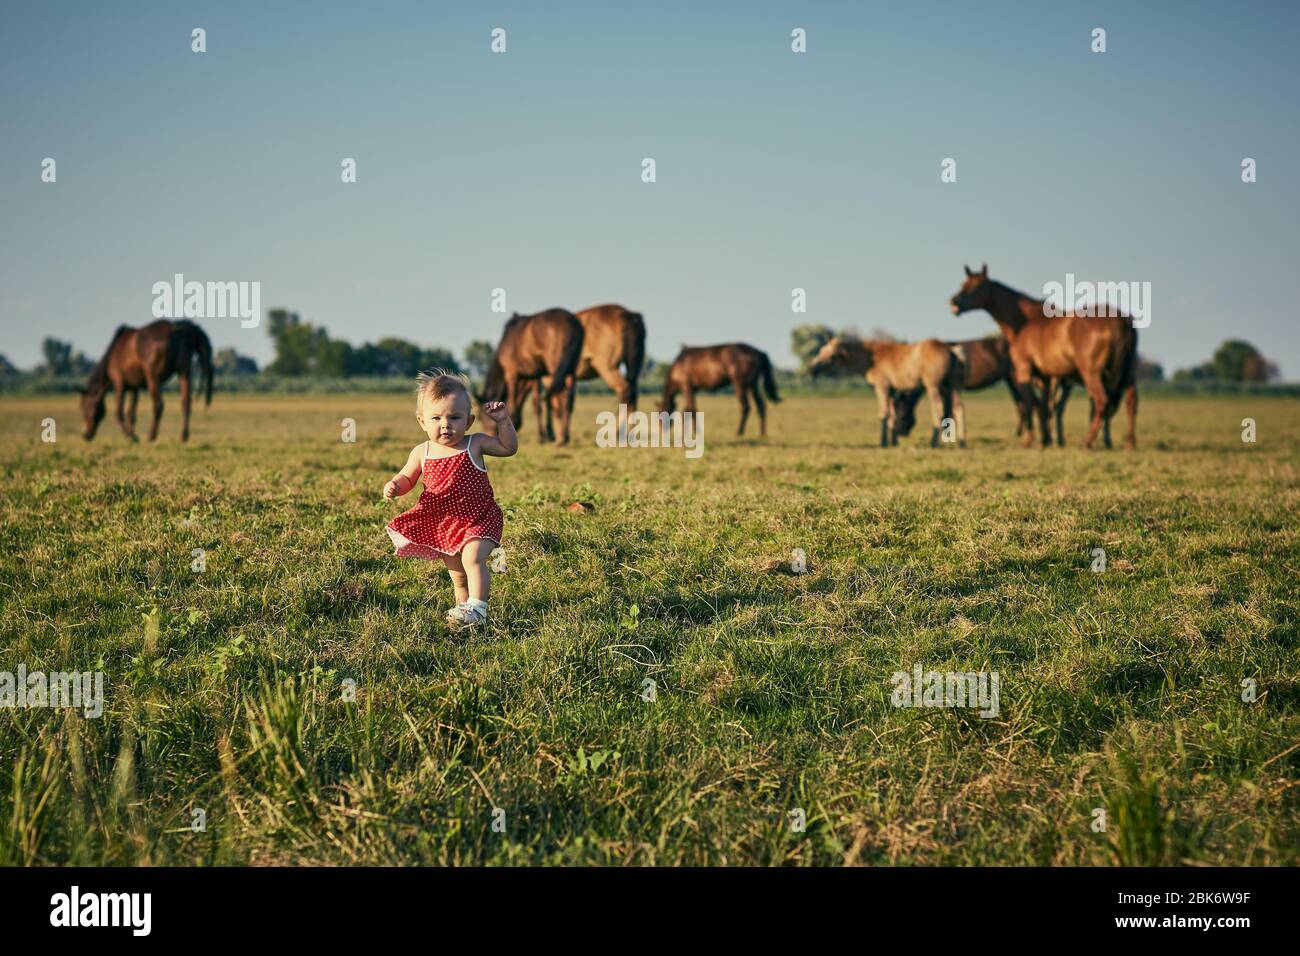 Petite fille en robe rouge dans un champ avec des chevaux. Banque D'Images